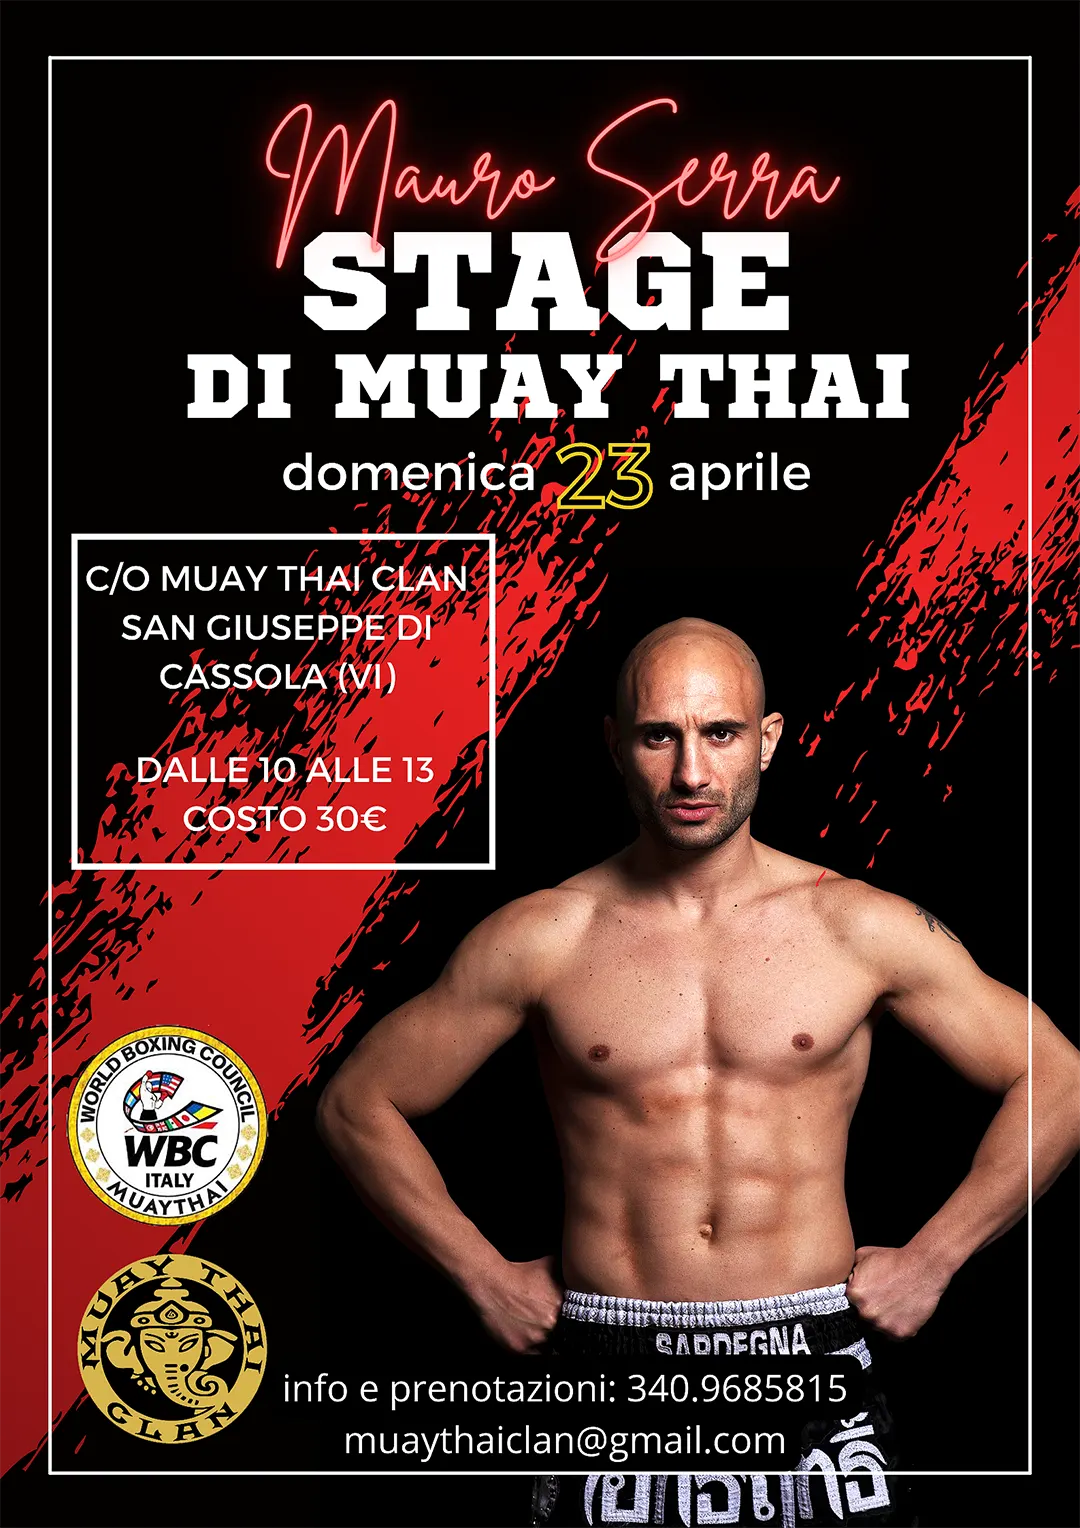 STAGE DI MUAY THAI con il campione Mauro Serra - News Muay Thai Clan